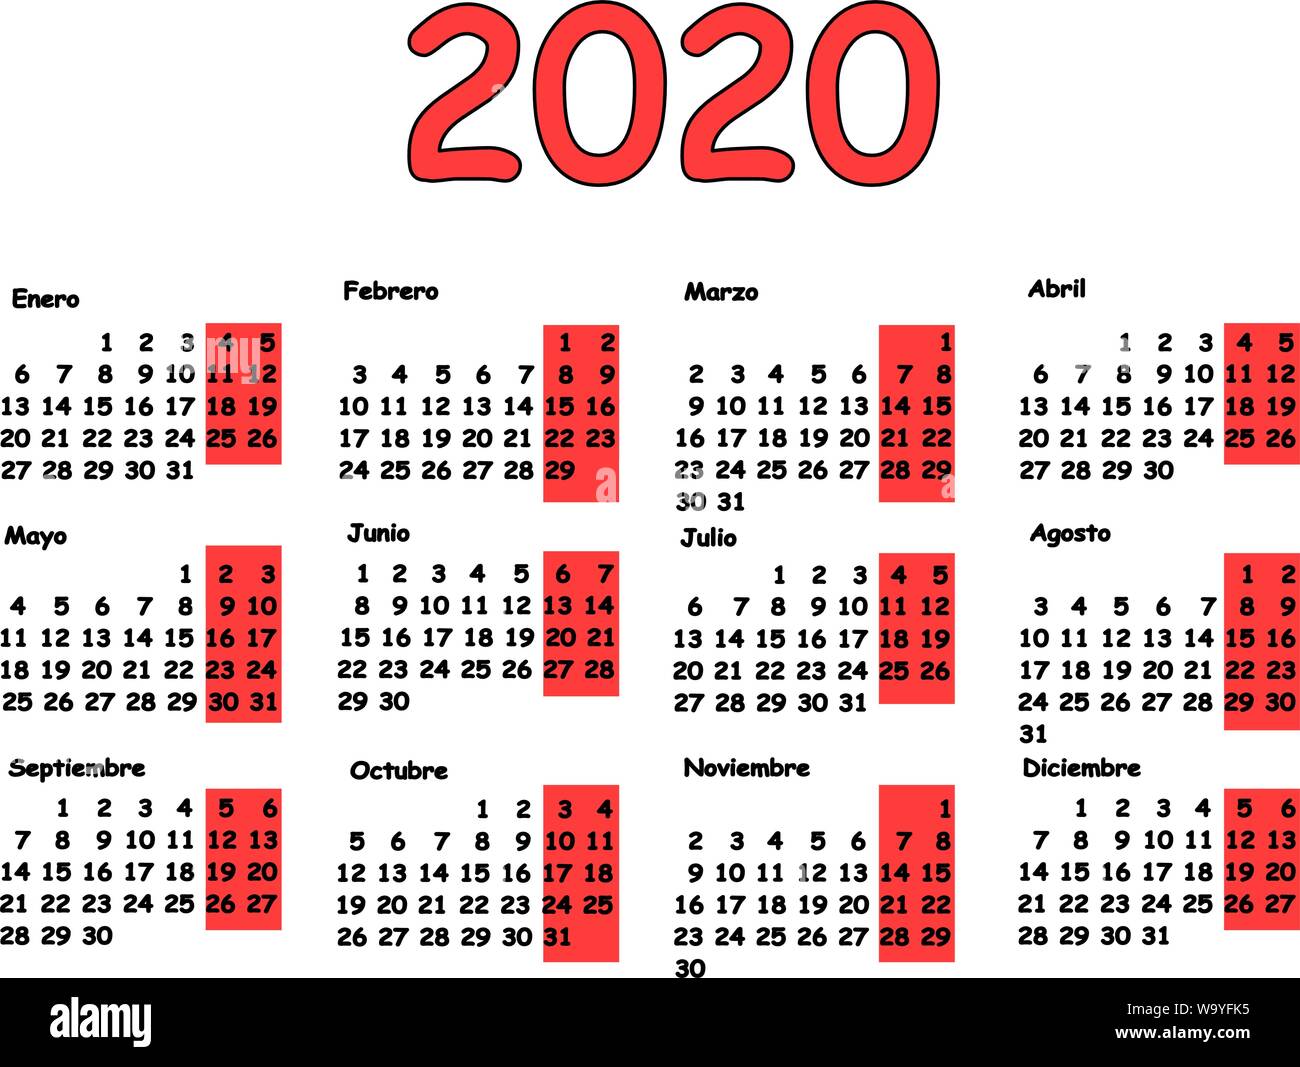 Kalender 2020 Grid spanische Sprache. Monatliche Planung für das Jahr. Abbildung für Kalender Design. Stock Vektor